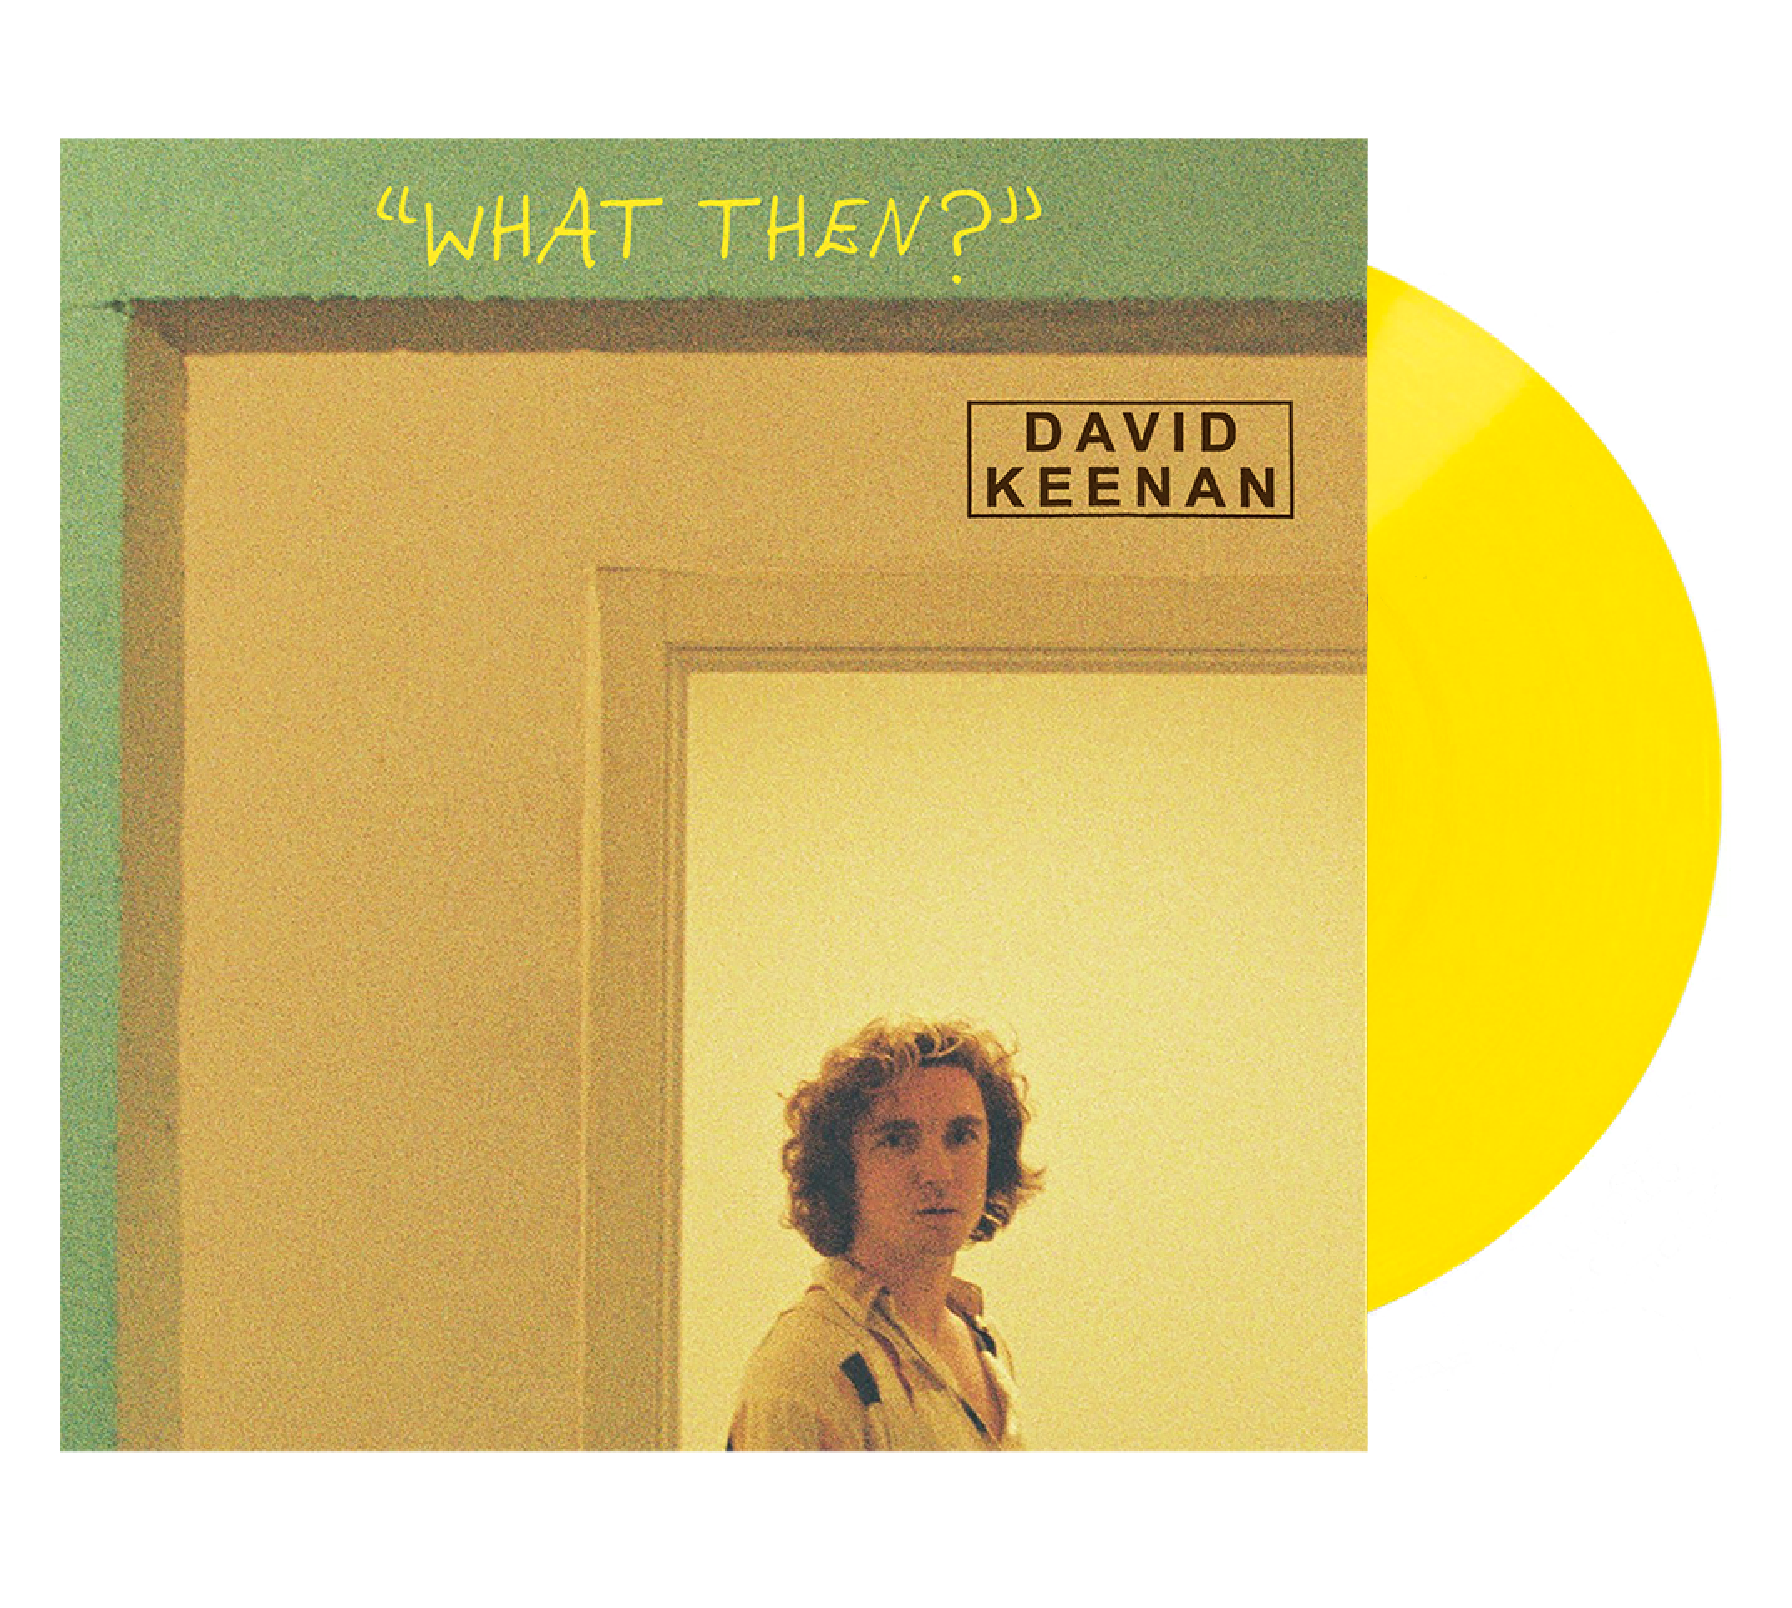 David Keenan - "WHAT THEN?" (CD, Tape &amp; Vinyl)